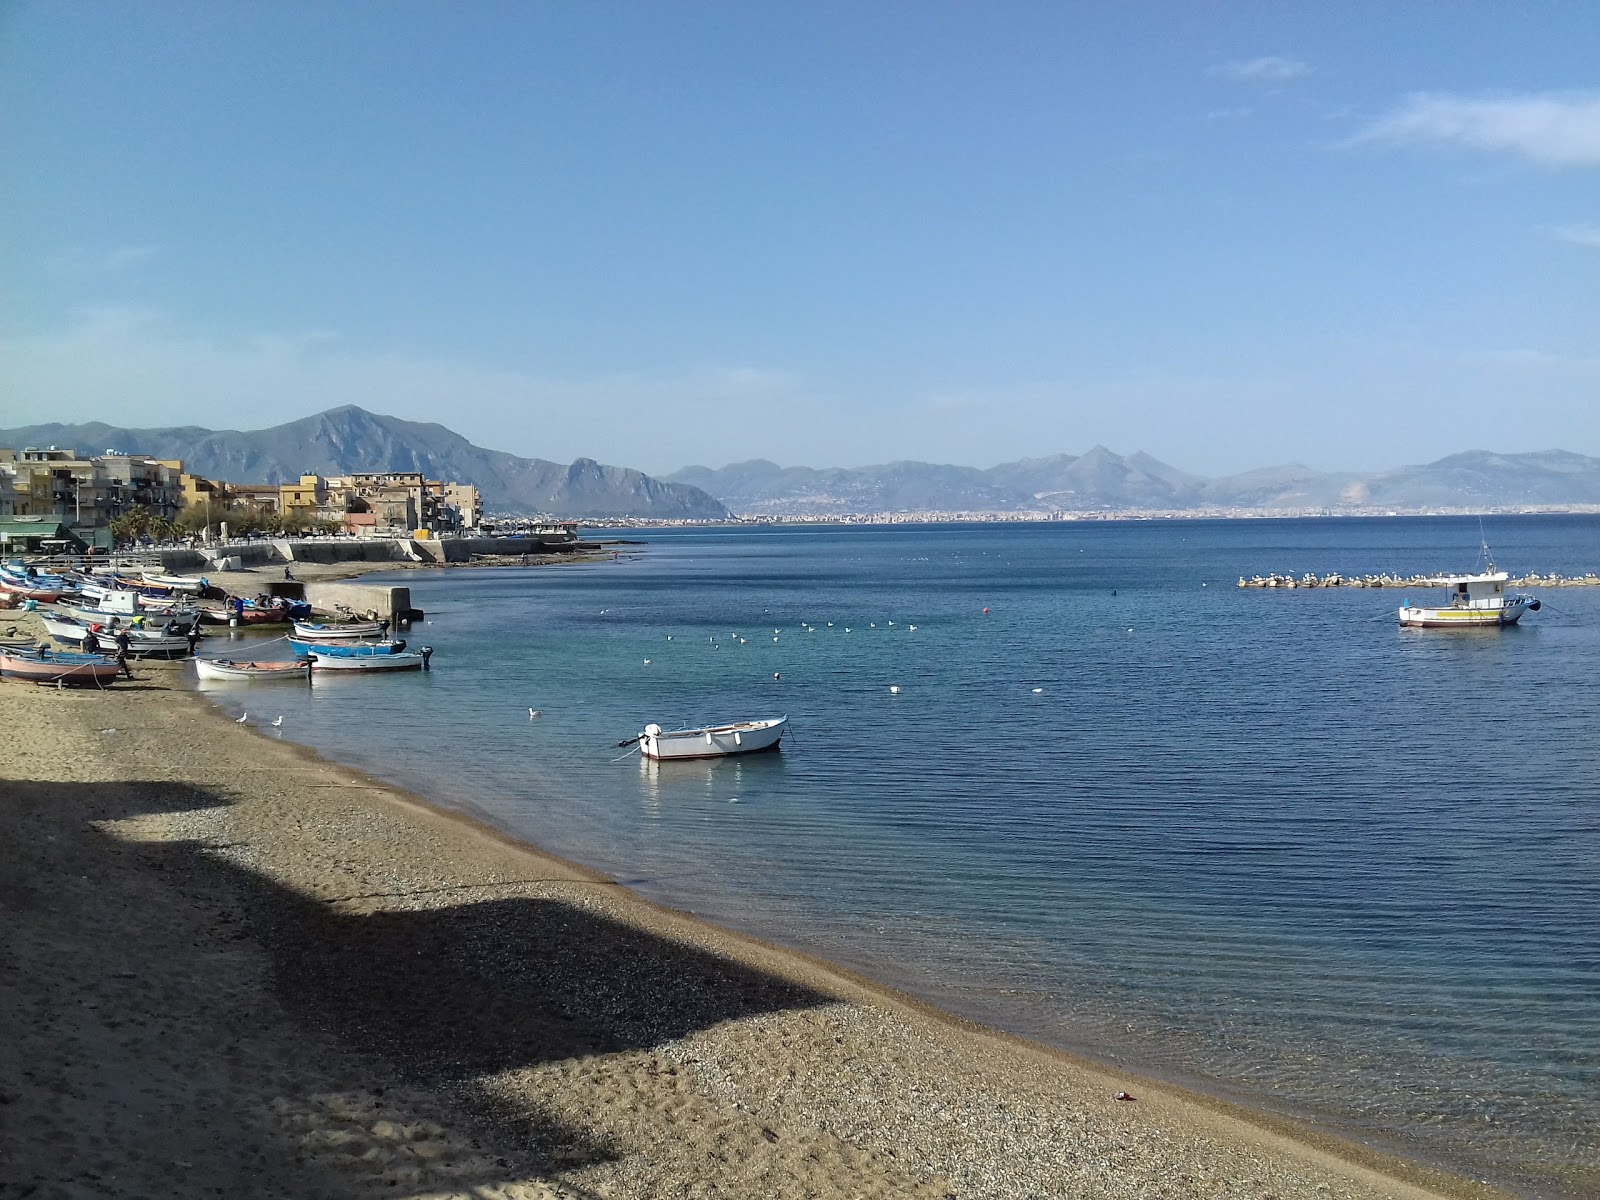 Aspra beach'in fotoğrafı parlak kum yüzey ile